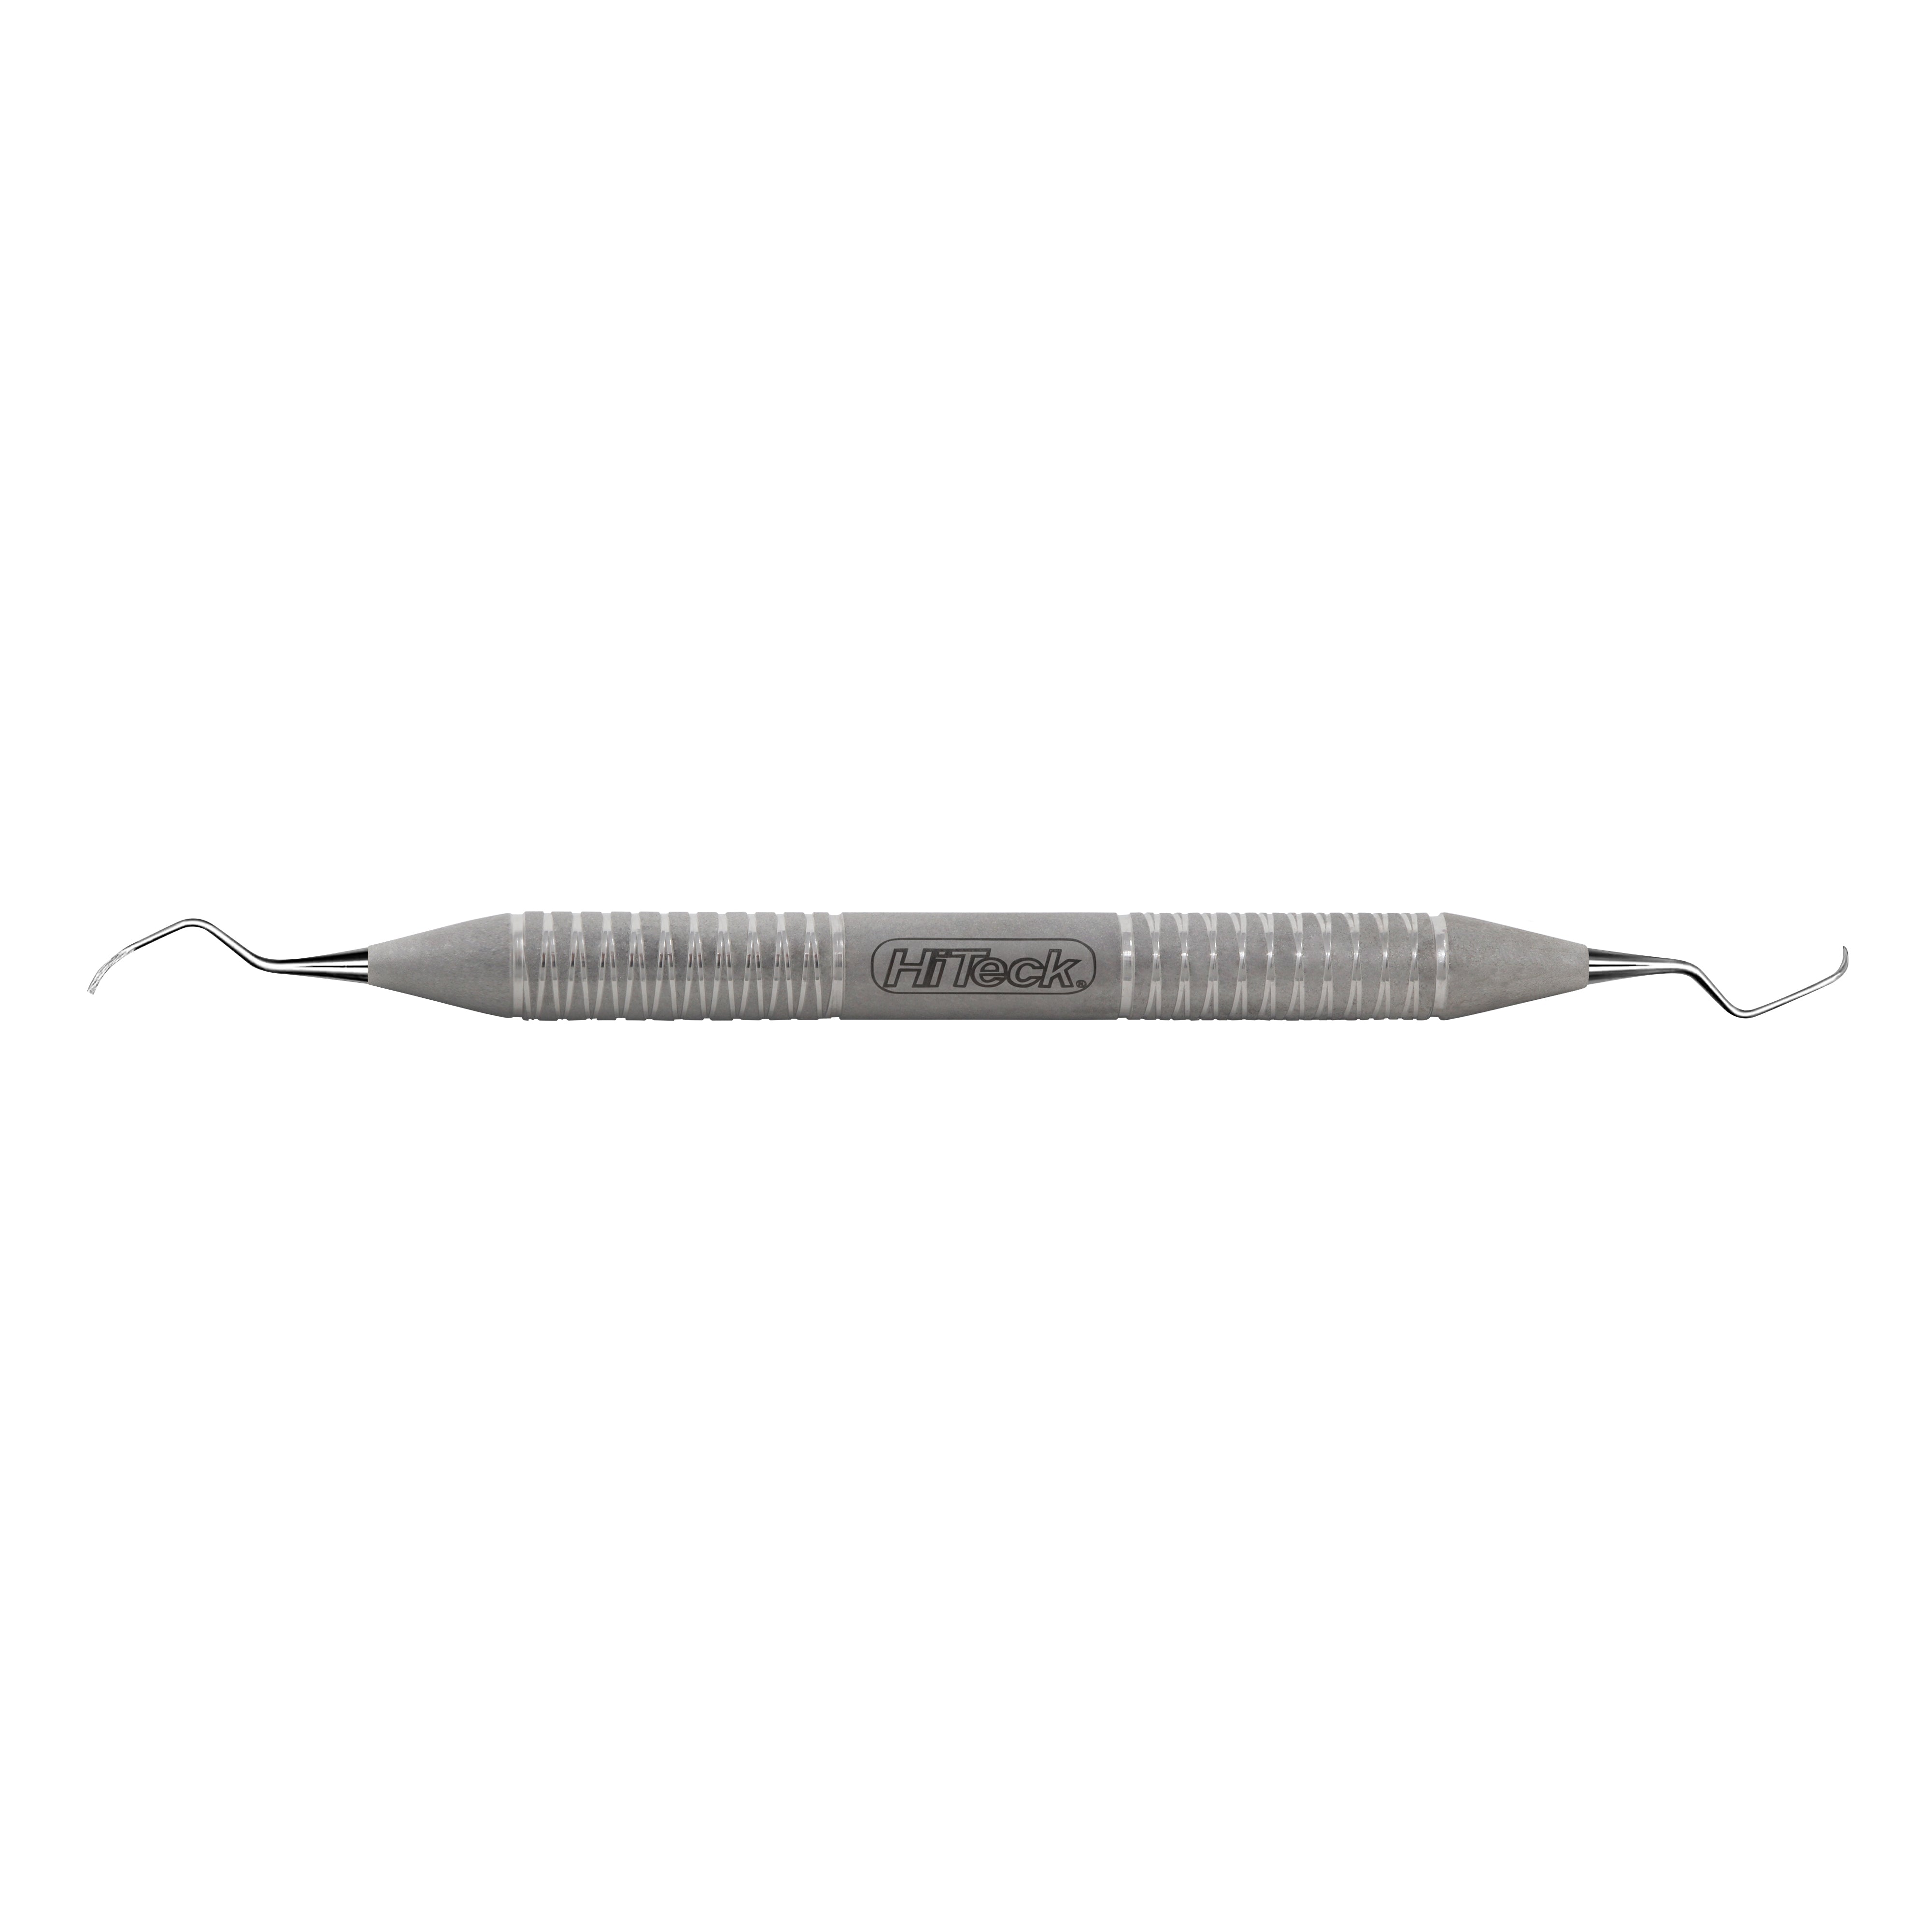 #4 Kramer Nevins Periodontal Surgical Curette - HiTeck Medical Instruments